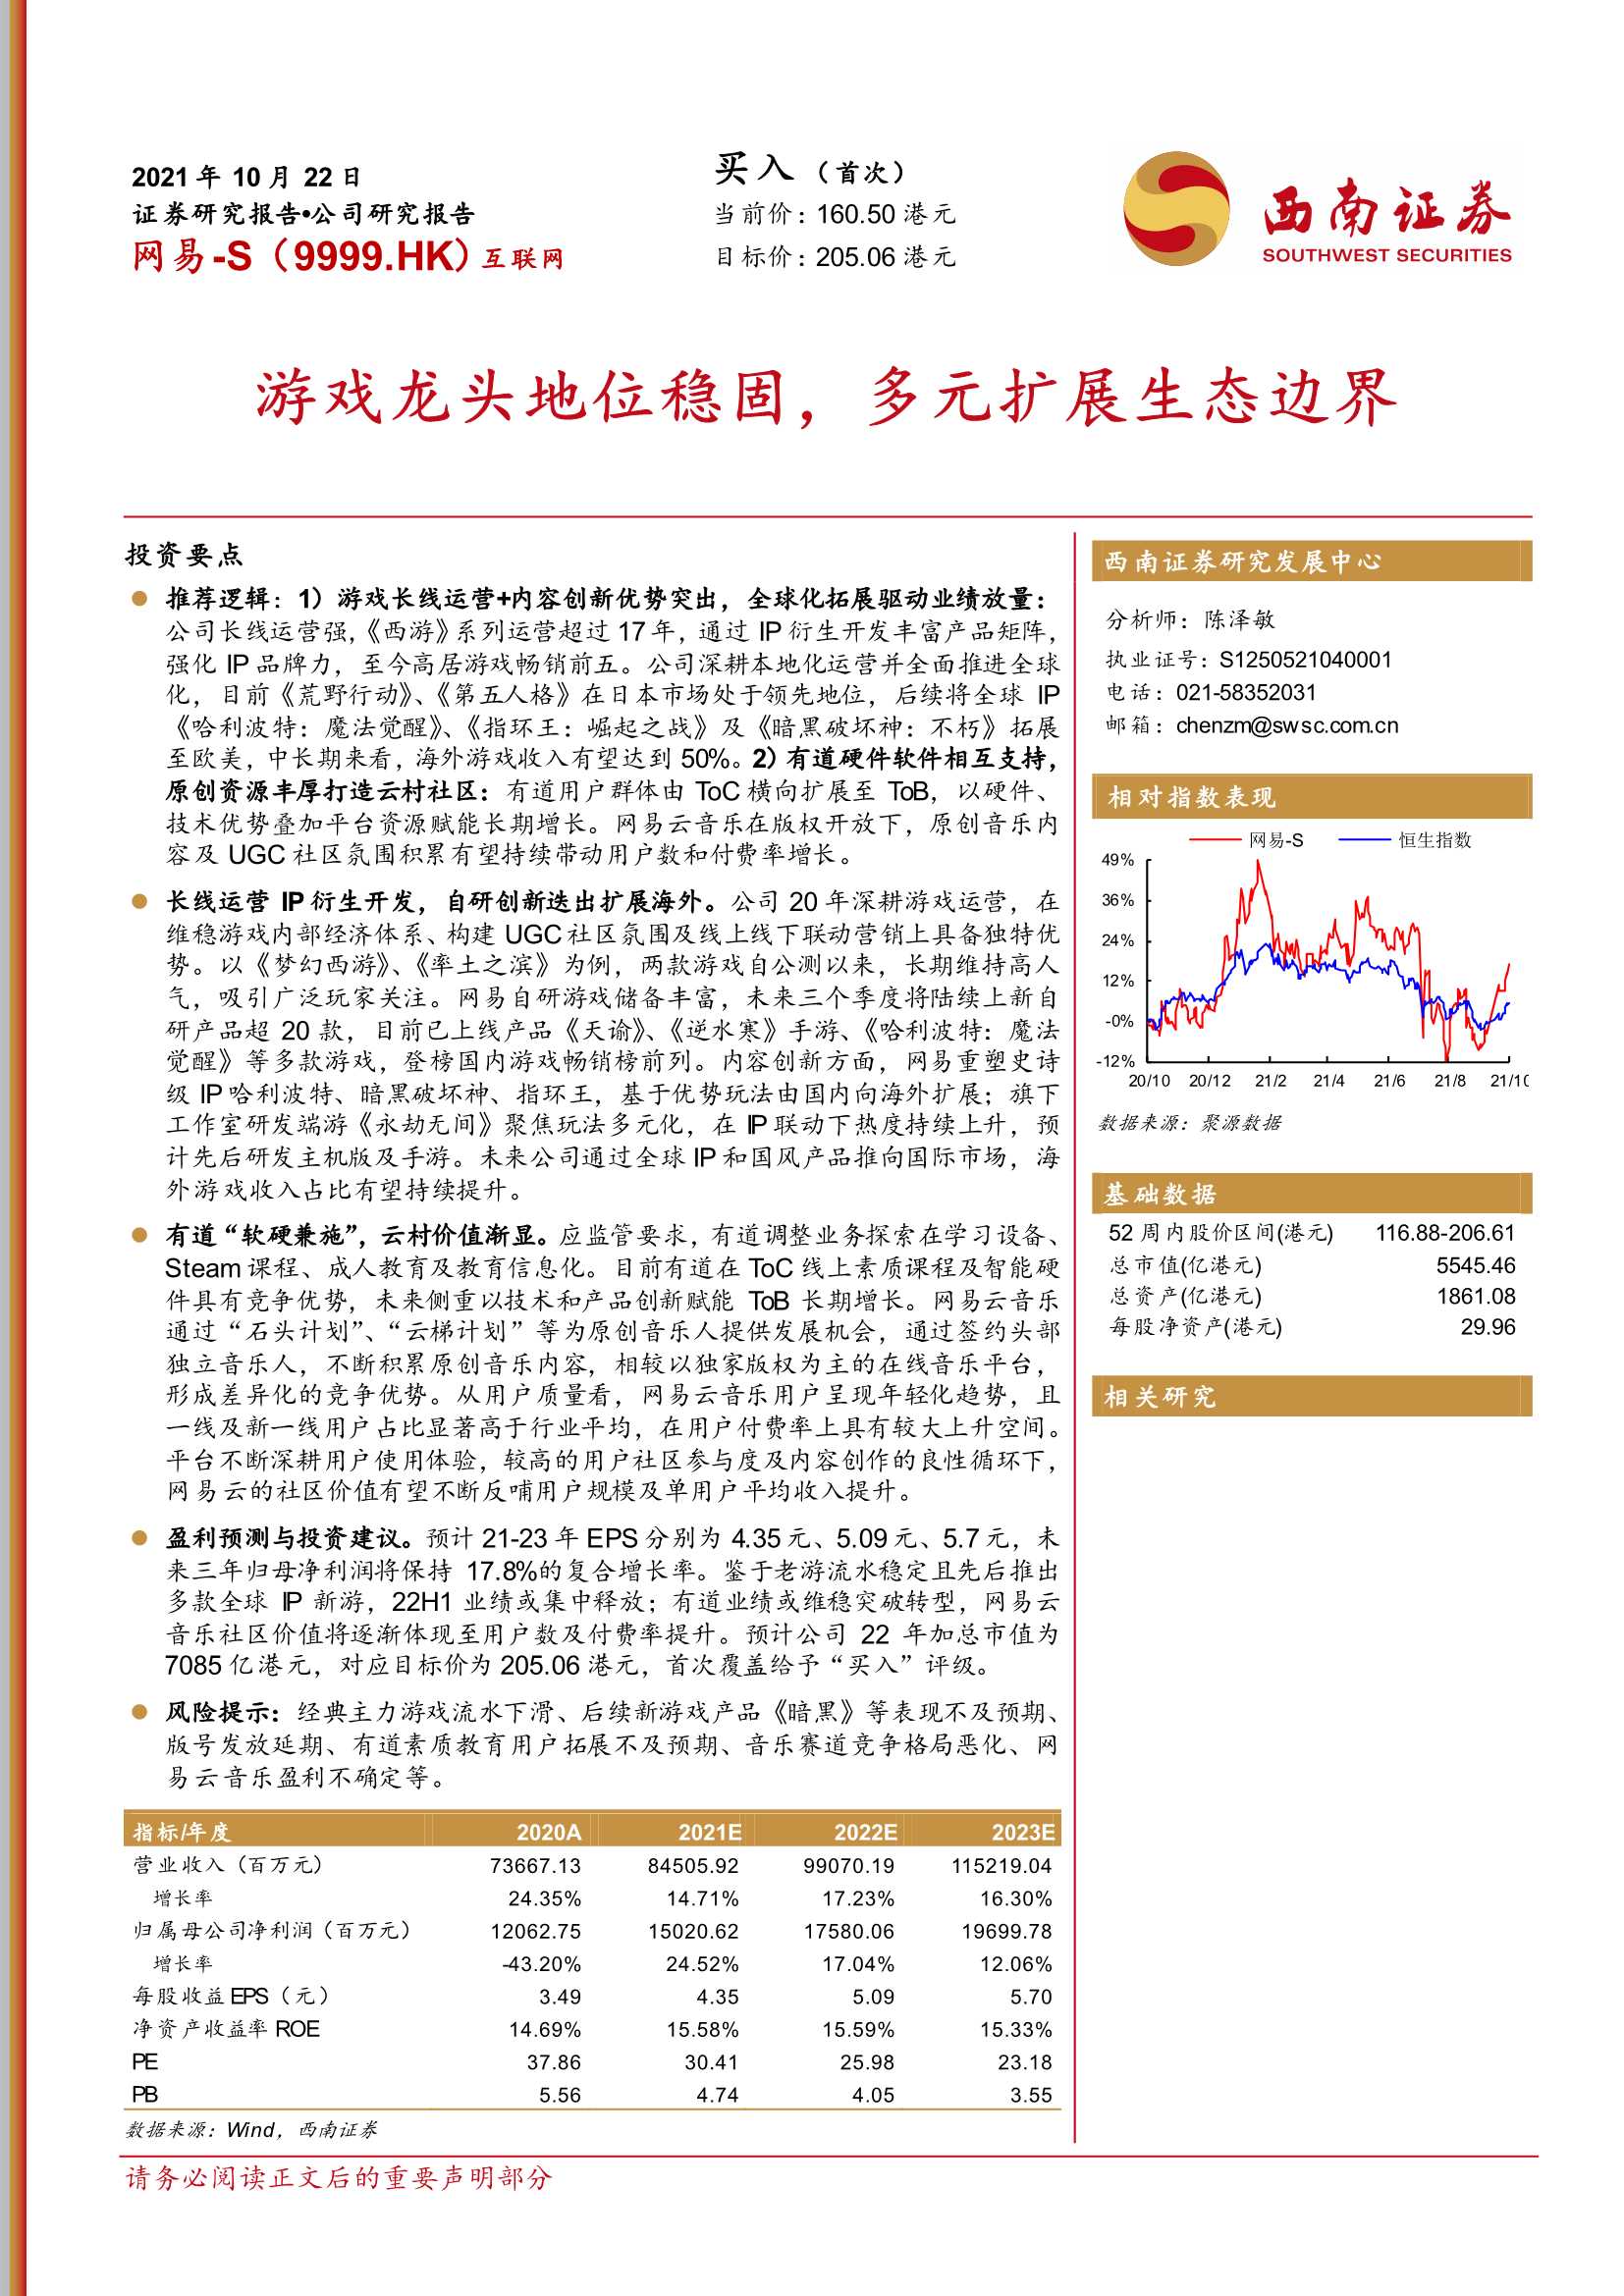 西南证券-网易-S-9999.HK-游戏龙头地位稳固，多元扩展生态边界-20211022-27页